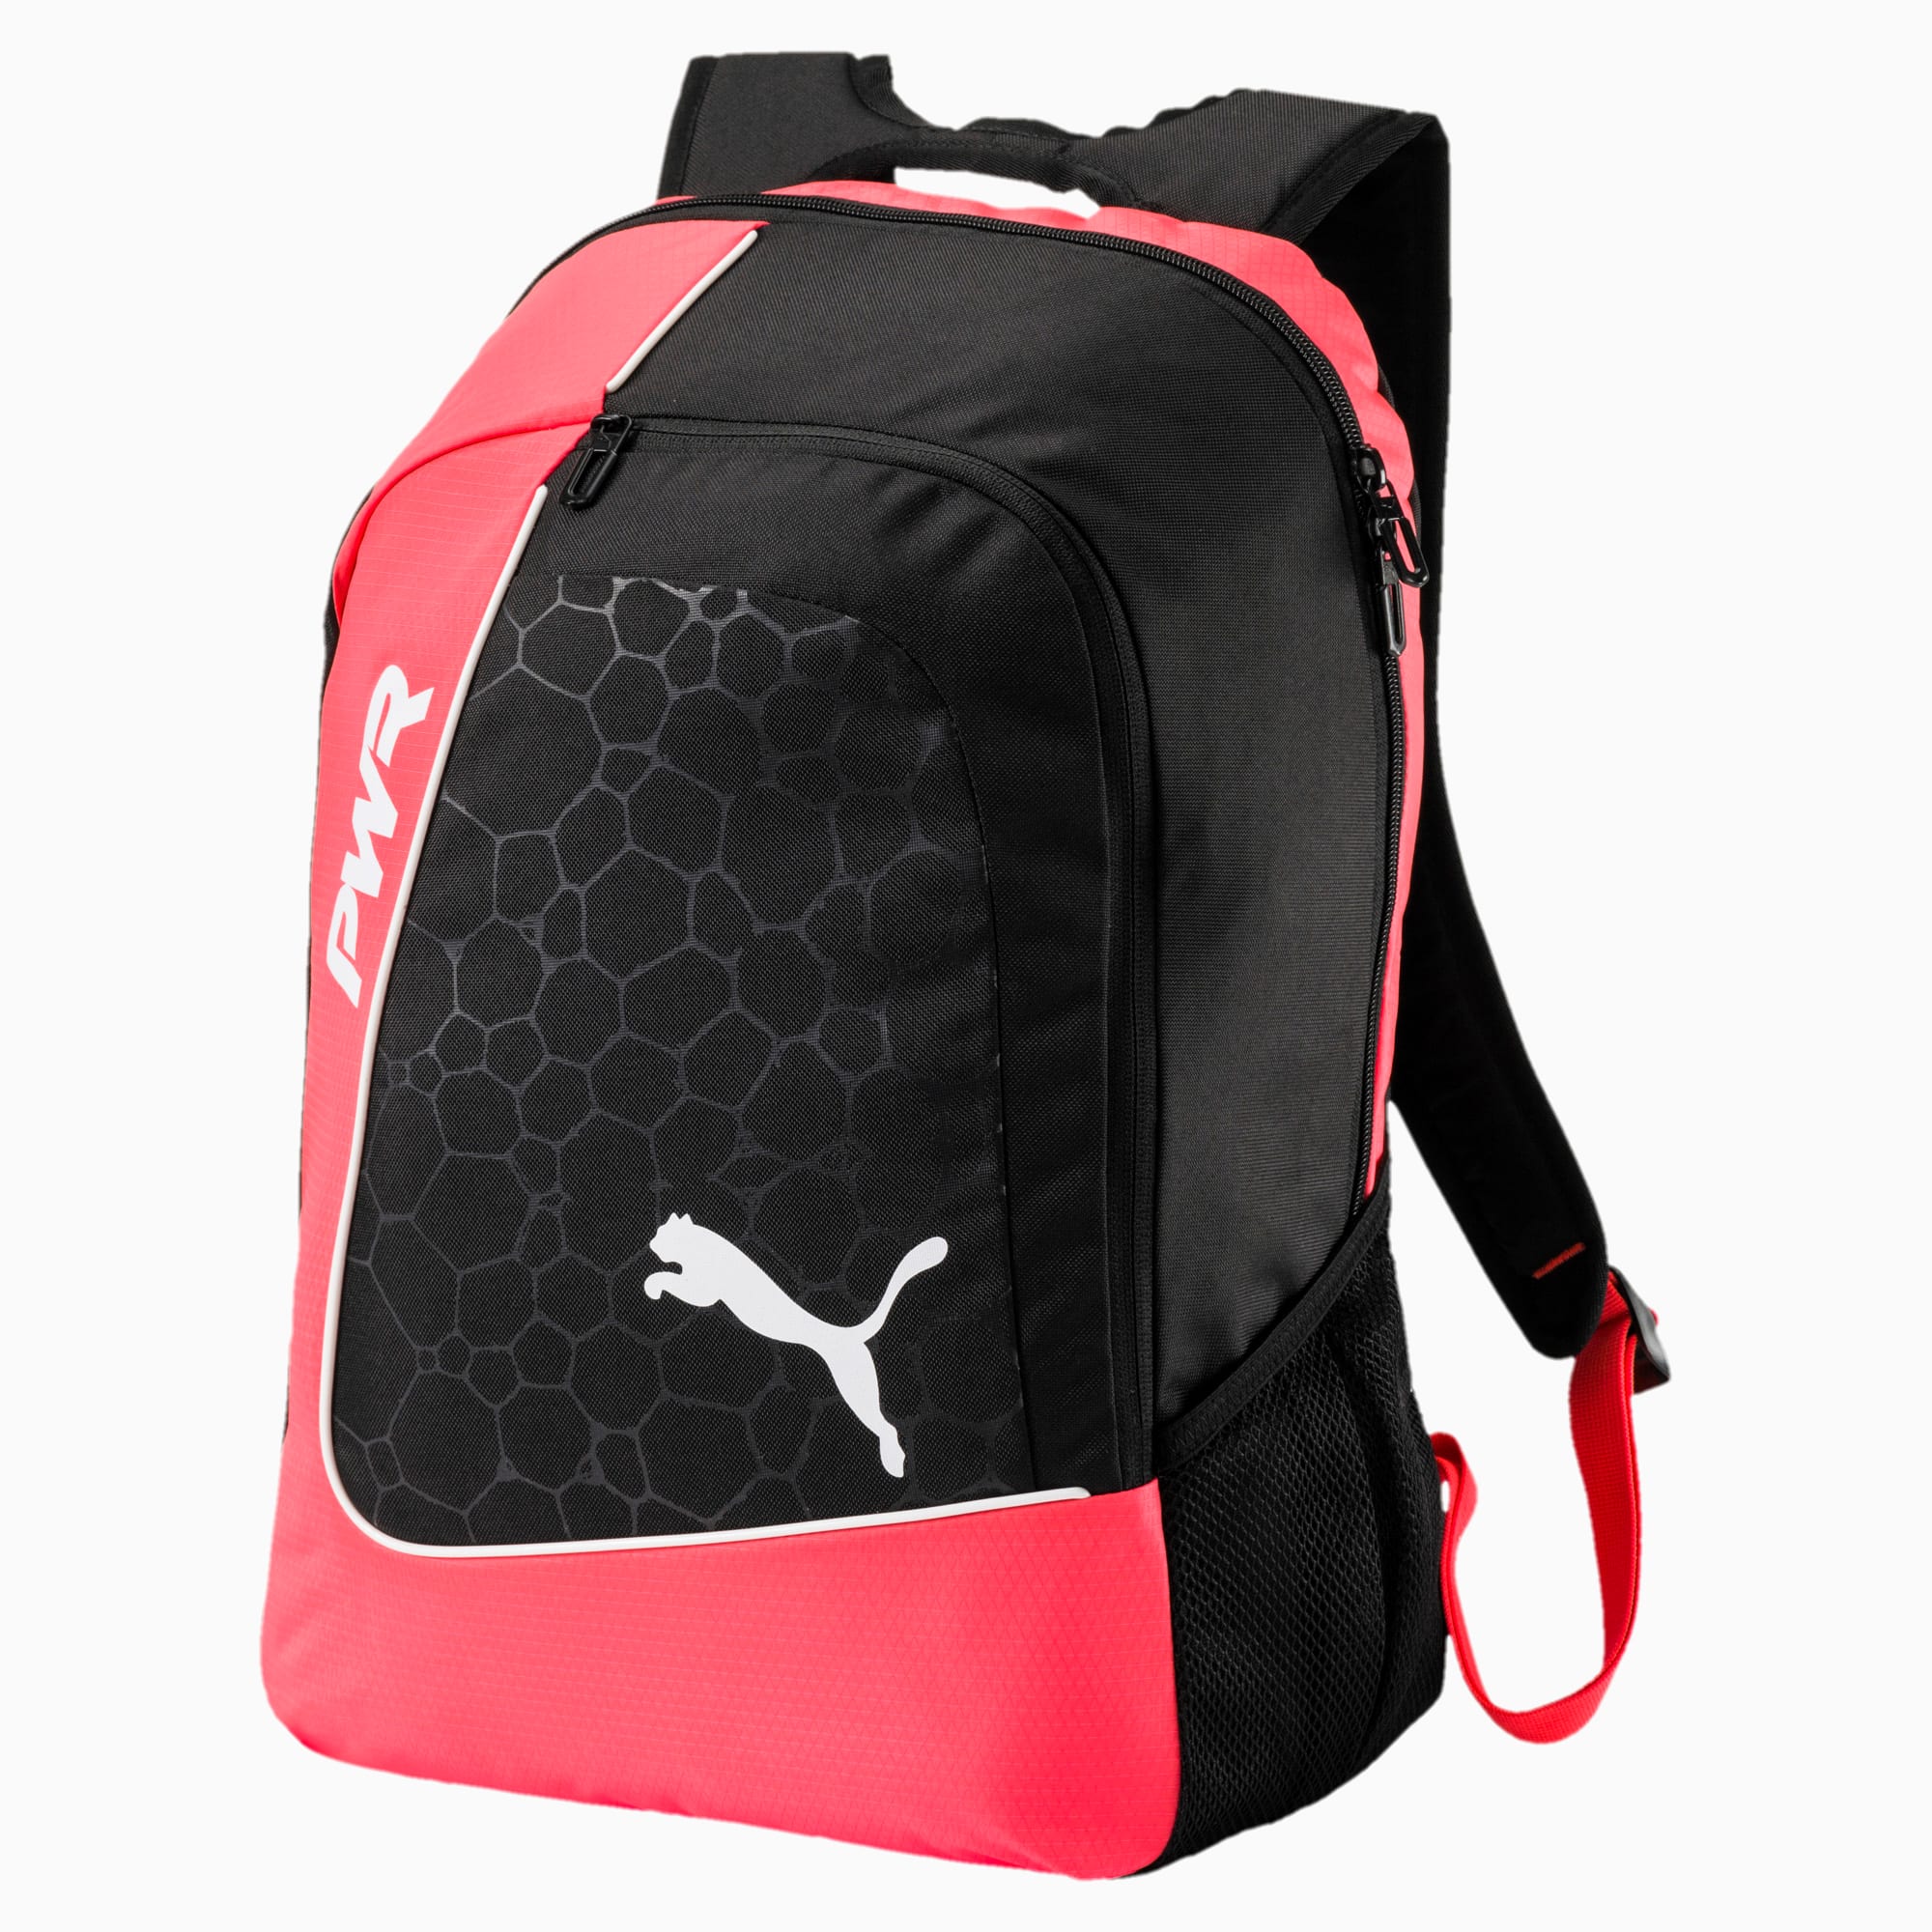 puma evopower backpack